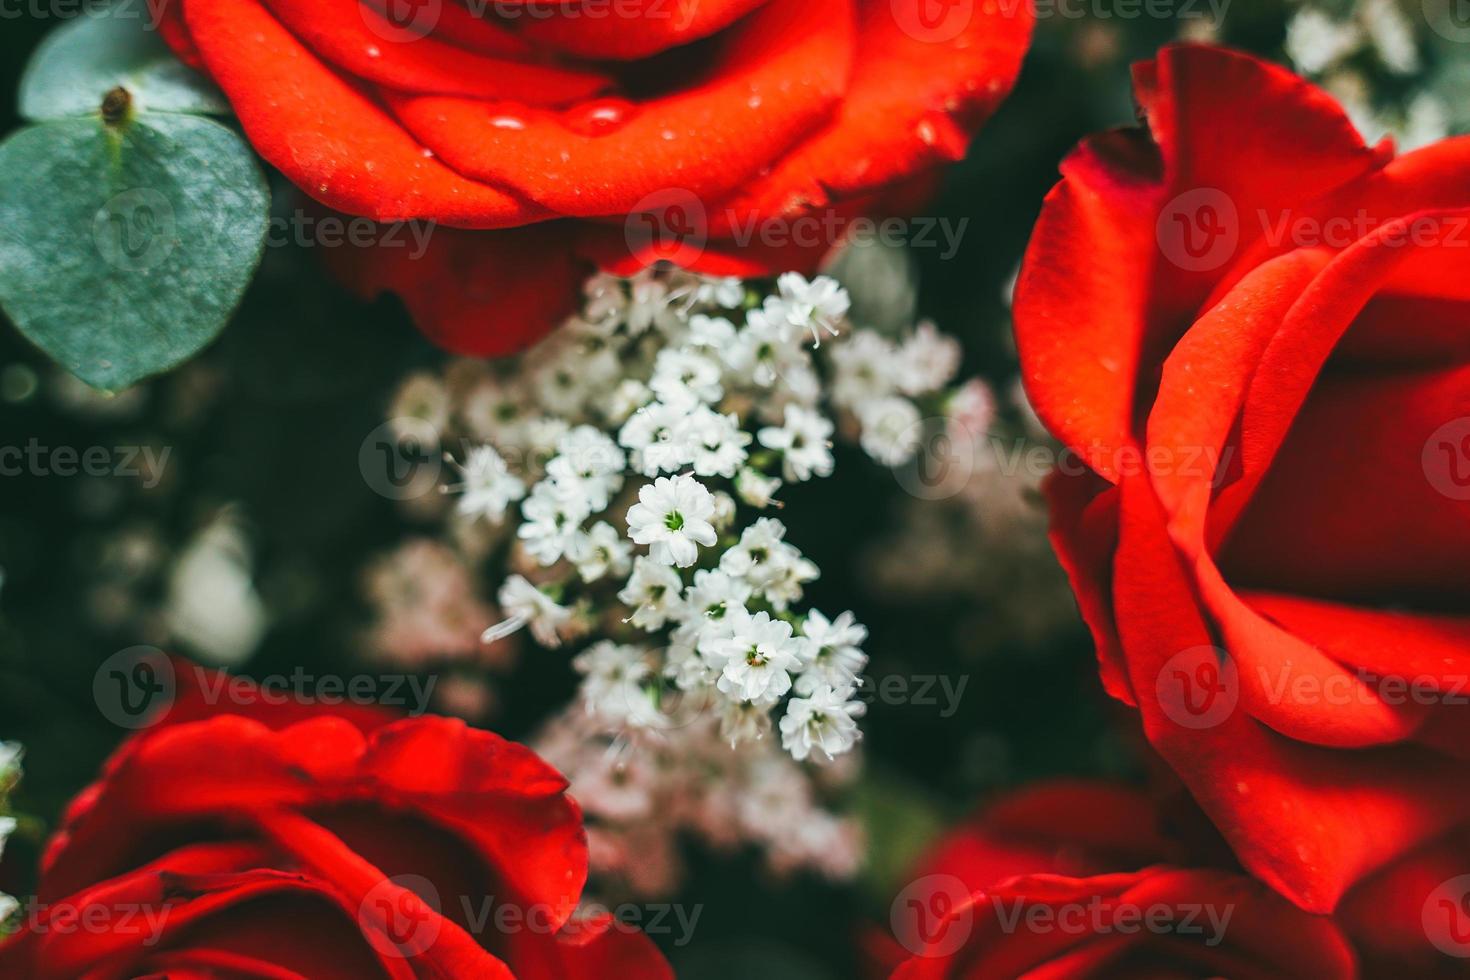 buquê de rosas vermelhas frescas, fundo brilhante de flores. close-up de uma rosa vermelha com gotas de água. foto